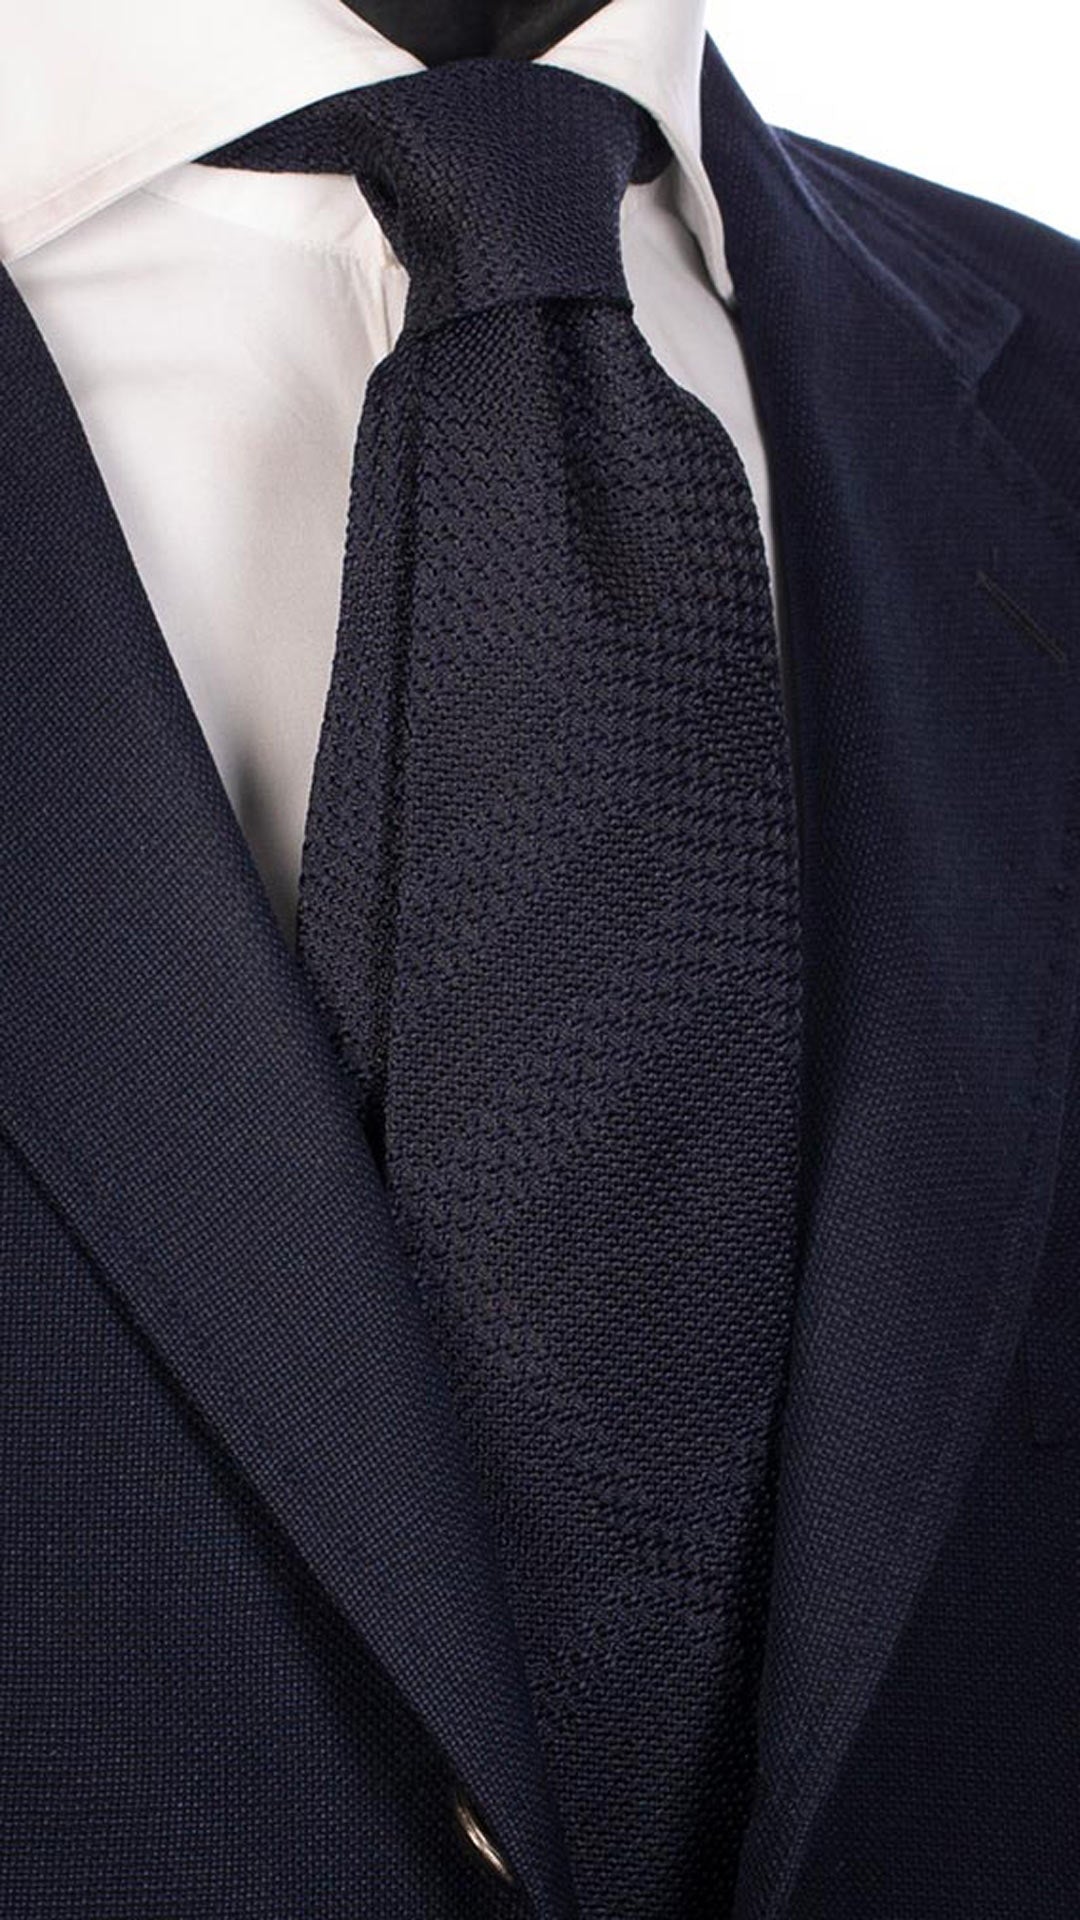 Cravatta da Cerimonia di Seta Blu Fantasia Blu Tono Su Tono CY3990 made in Italy Graffeo Cravatte